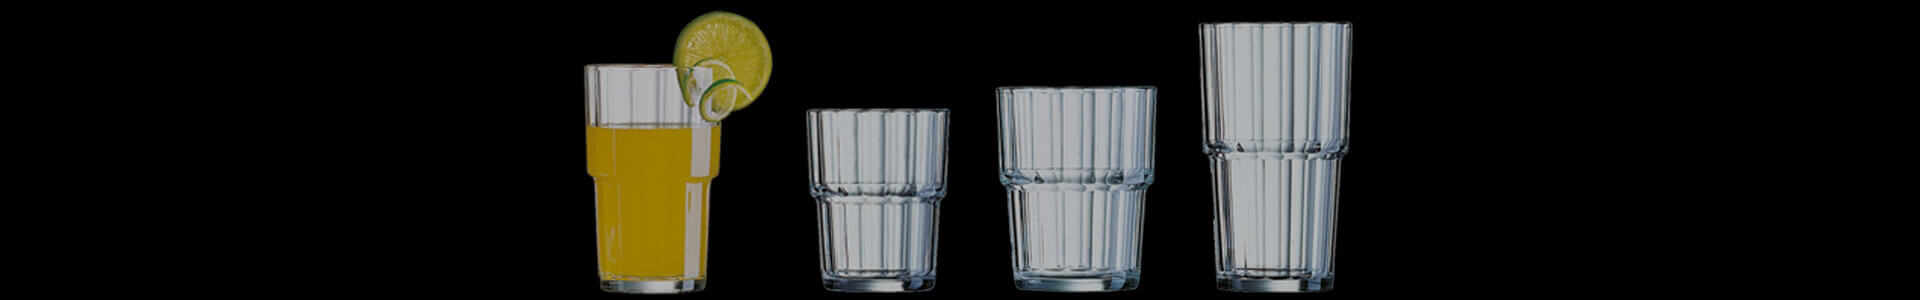 Gläser aus der Norvege Serie von Arcoroc in verschiedenen Größen.